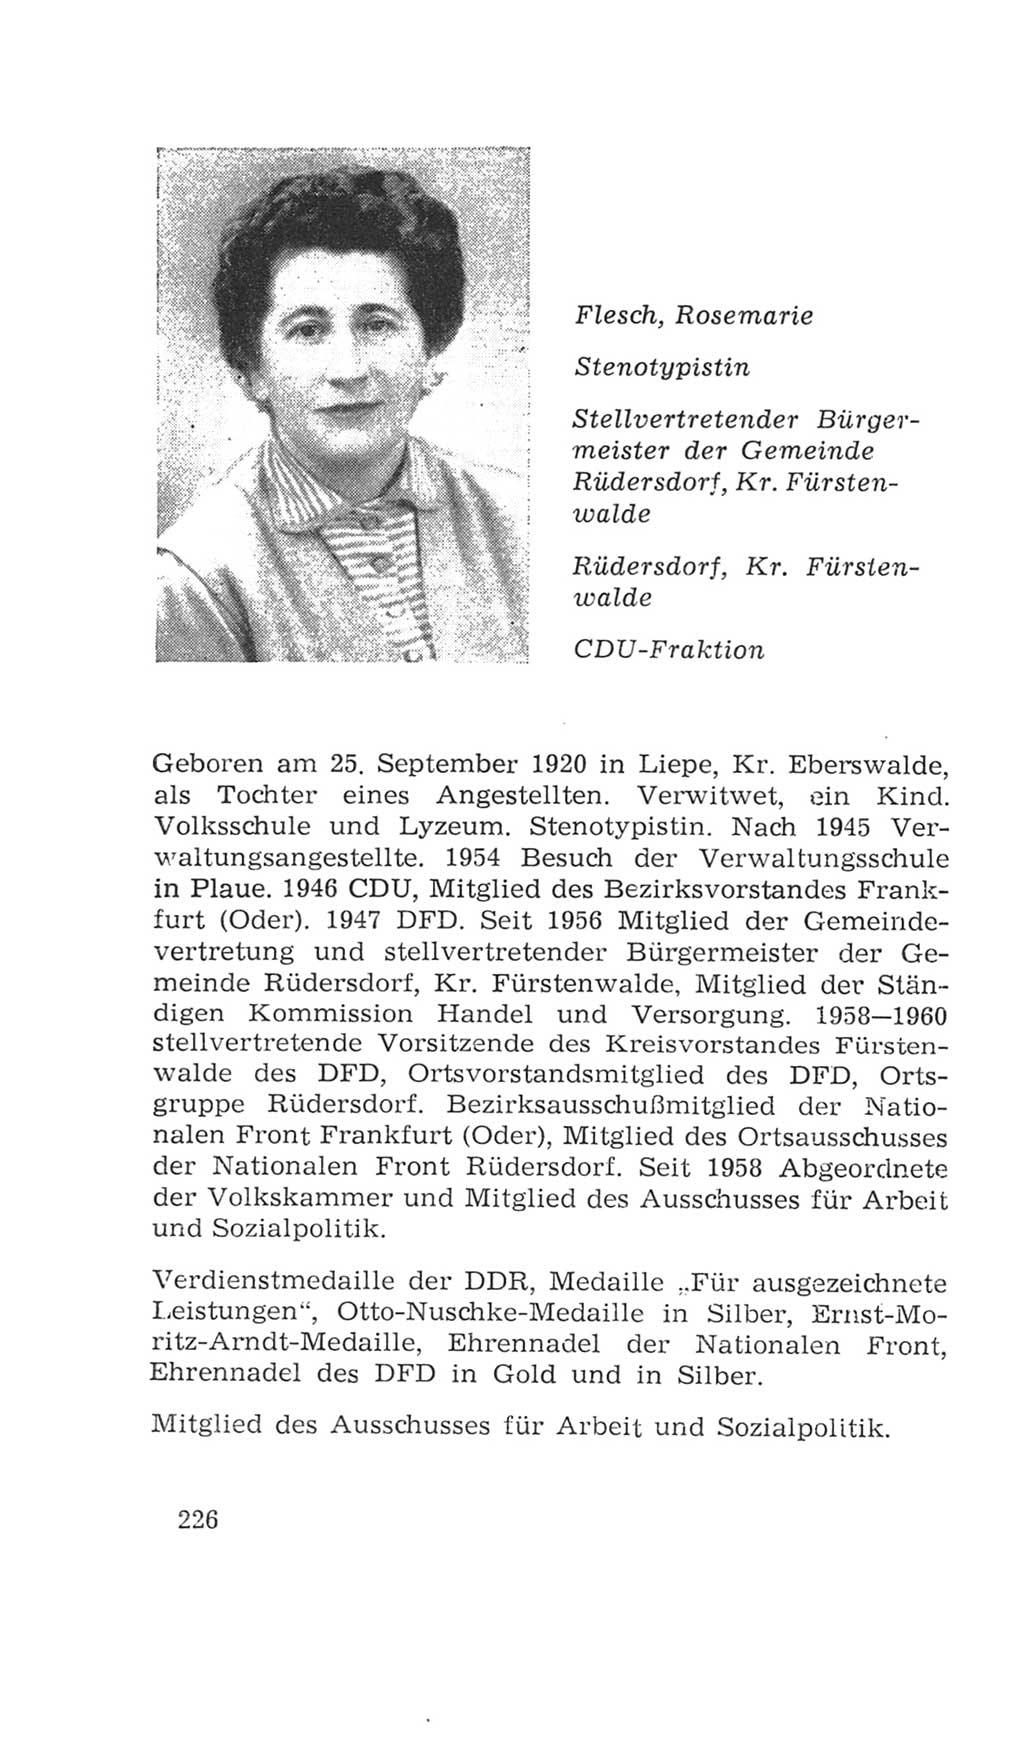 Volkskammer (VK) der Deutschen Demokratischen Republik (DDR), 4. Wahlperiode 1963-1967, Seite 226 (VK. DDR 4. WP. 1963-1967, S. 226)